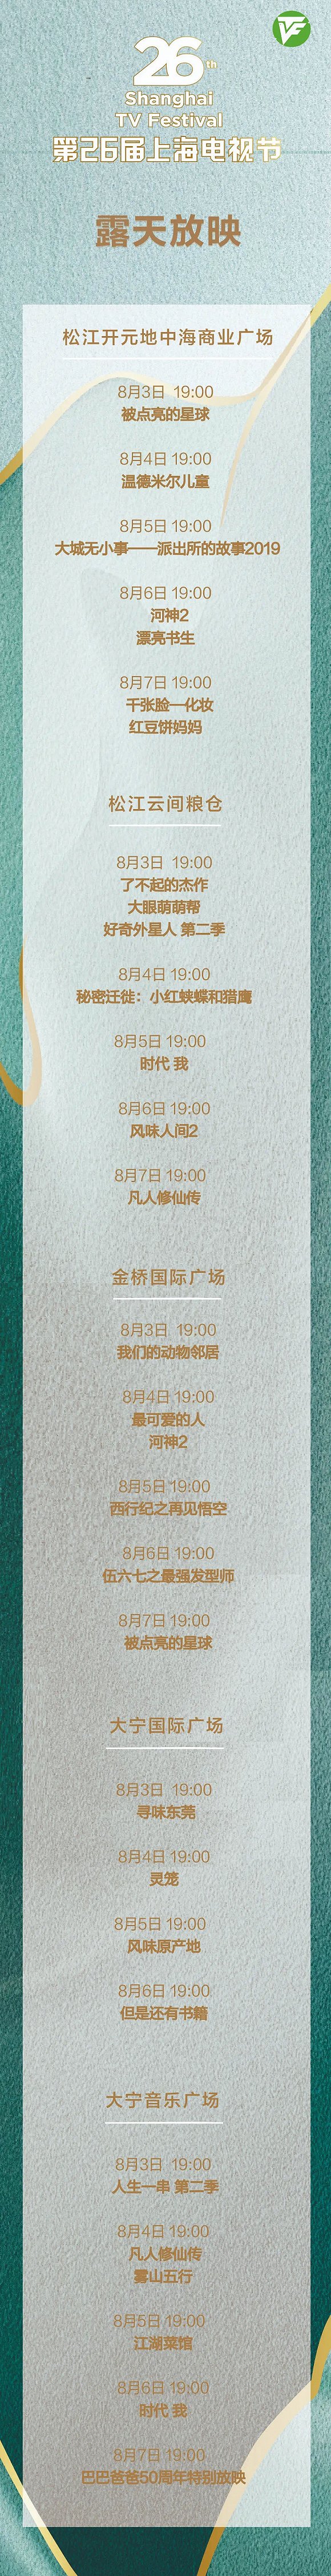 第26届上海电视节白玉兰露天放映活动8月3日启动，先到先入，额满即止